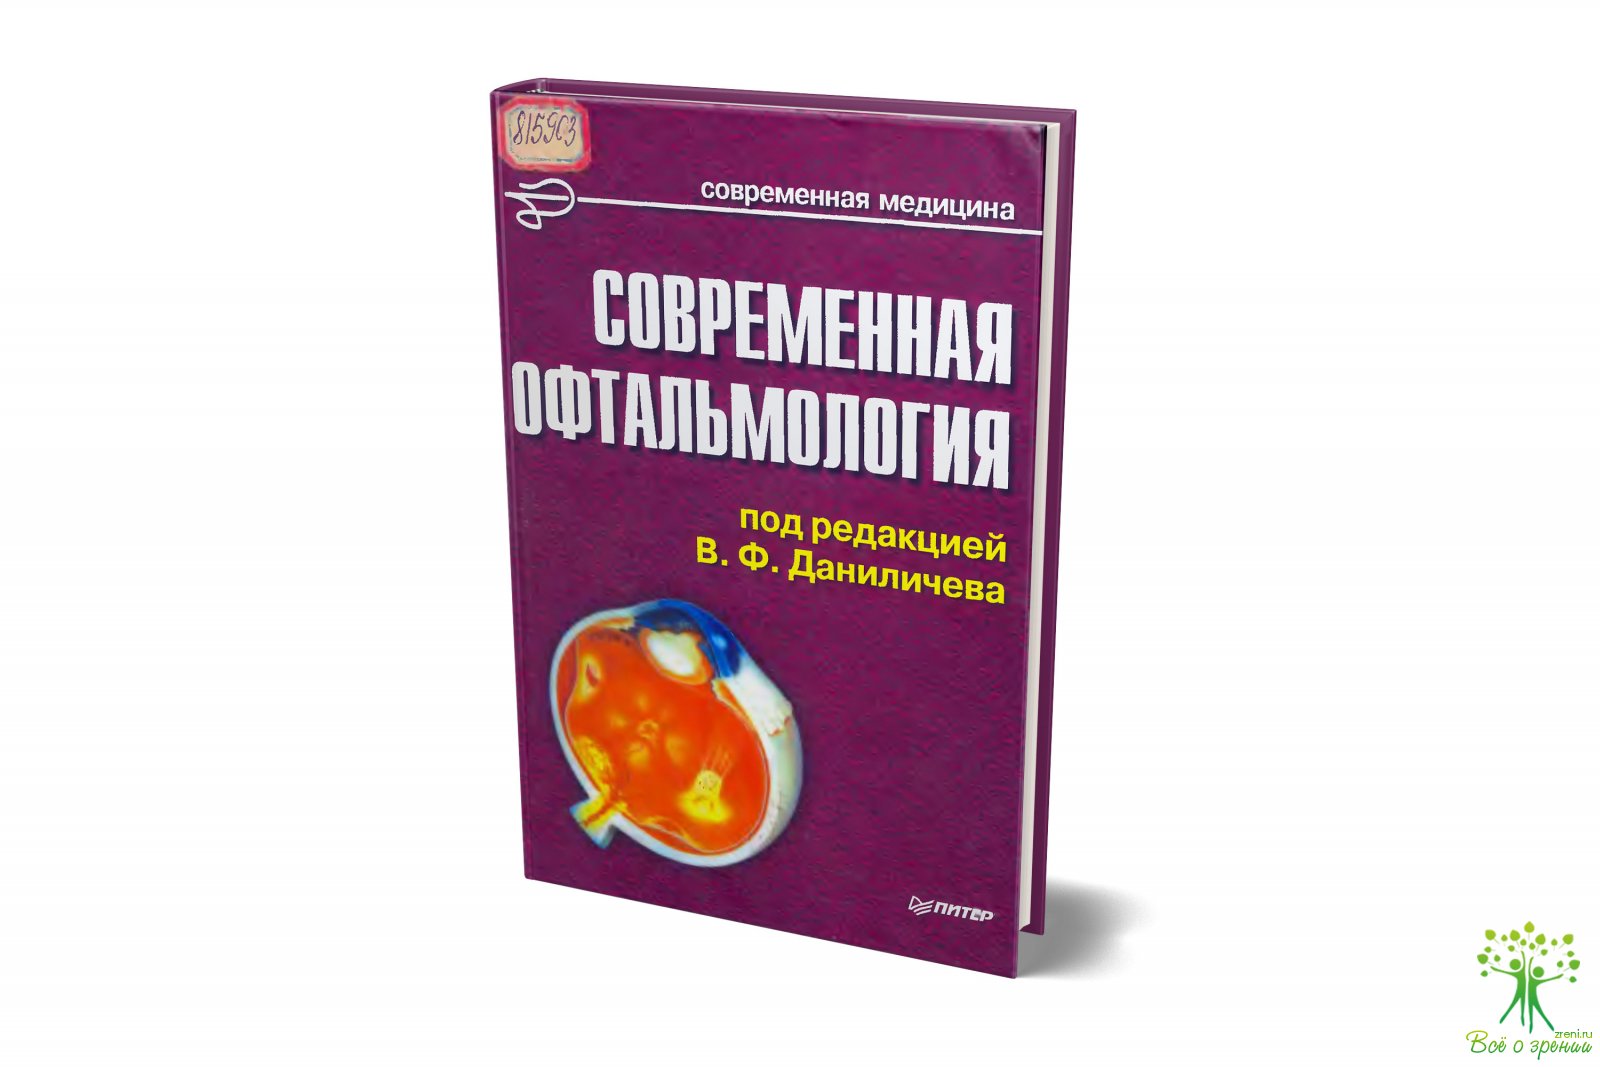 Современная офтальмология под редакцией В.Ф. Даниличева